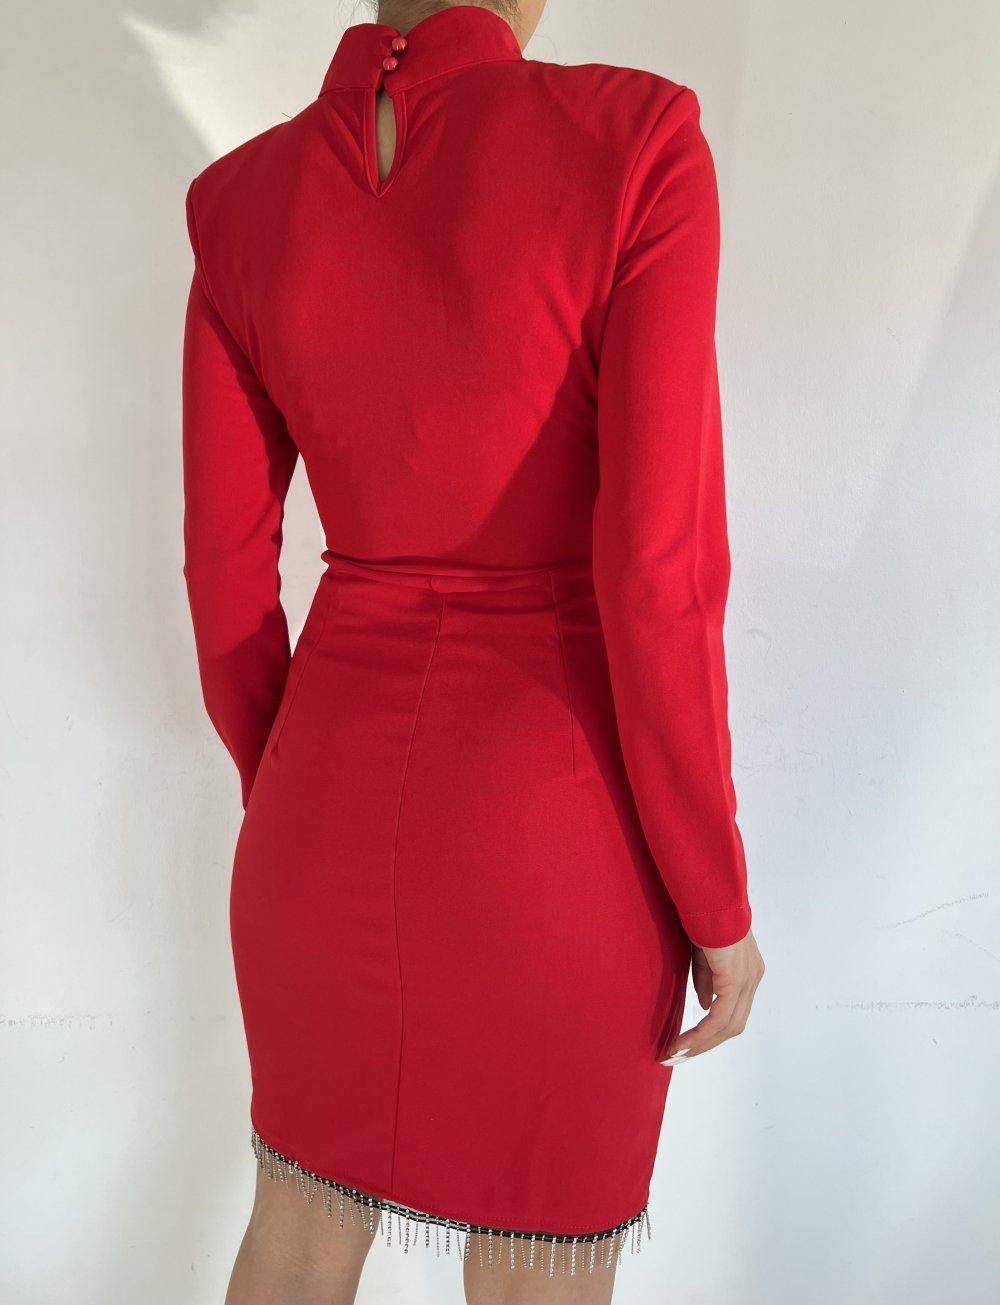 Etek Ucu Taşlı Dik Yaka Elbise 3758 J-6 Kırmızı